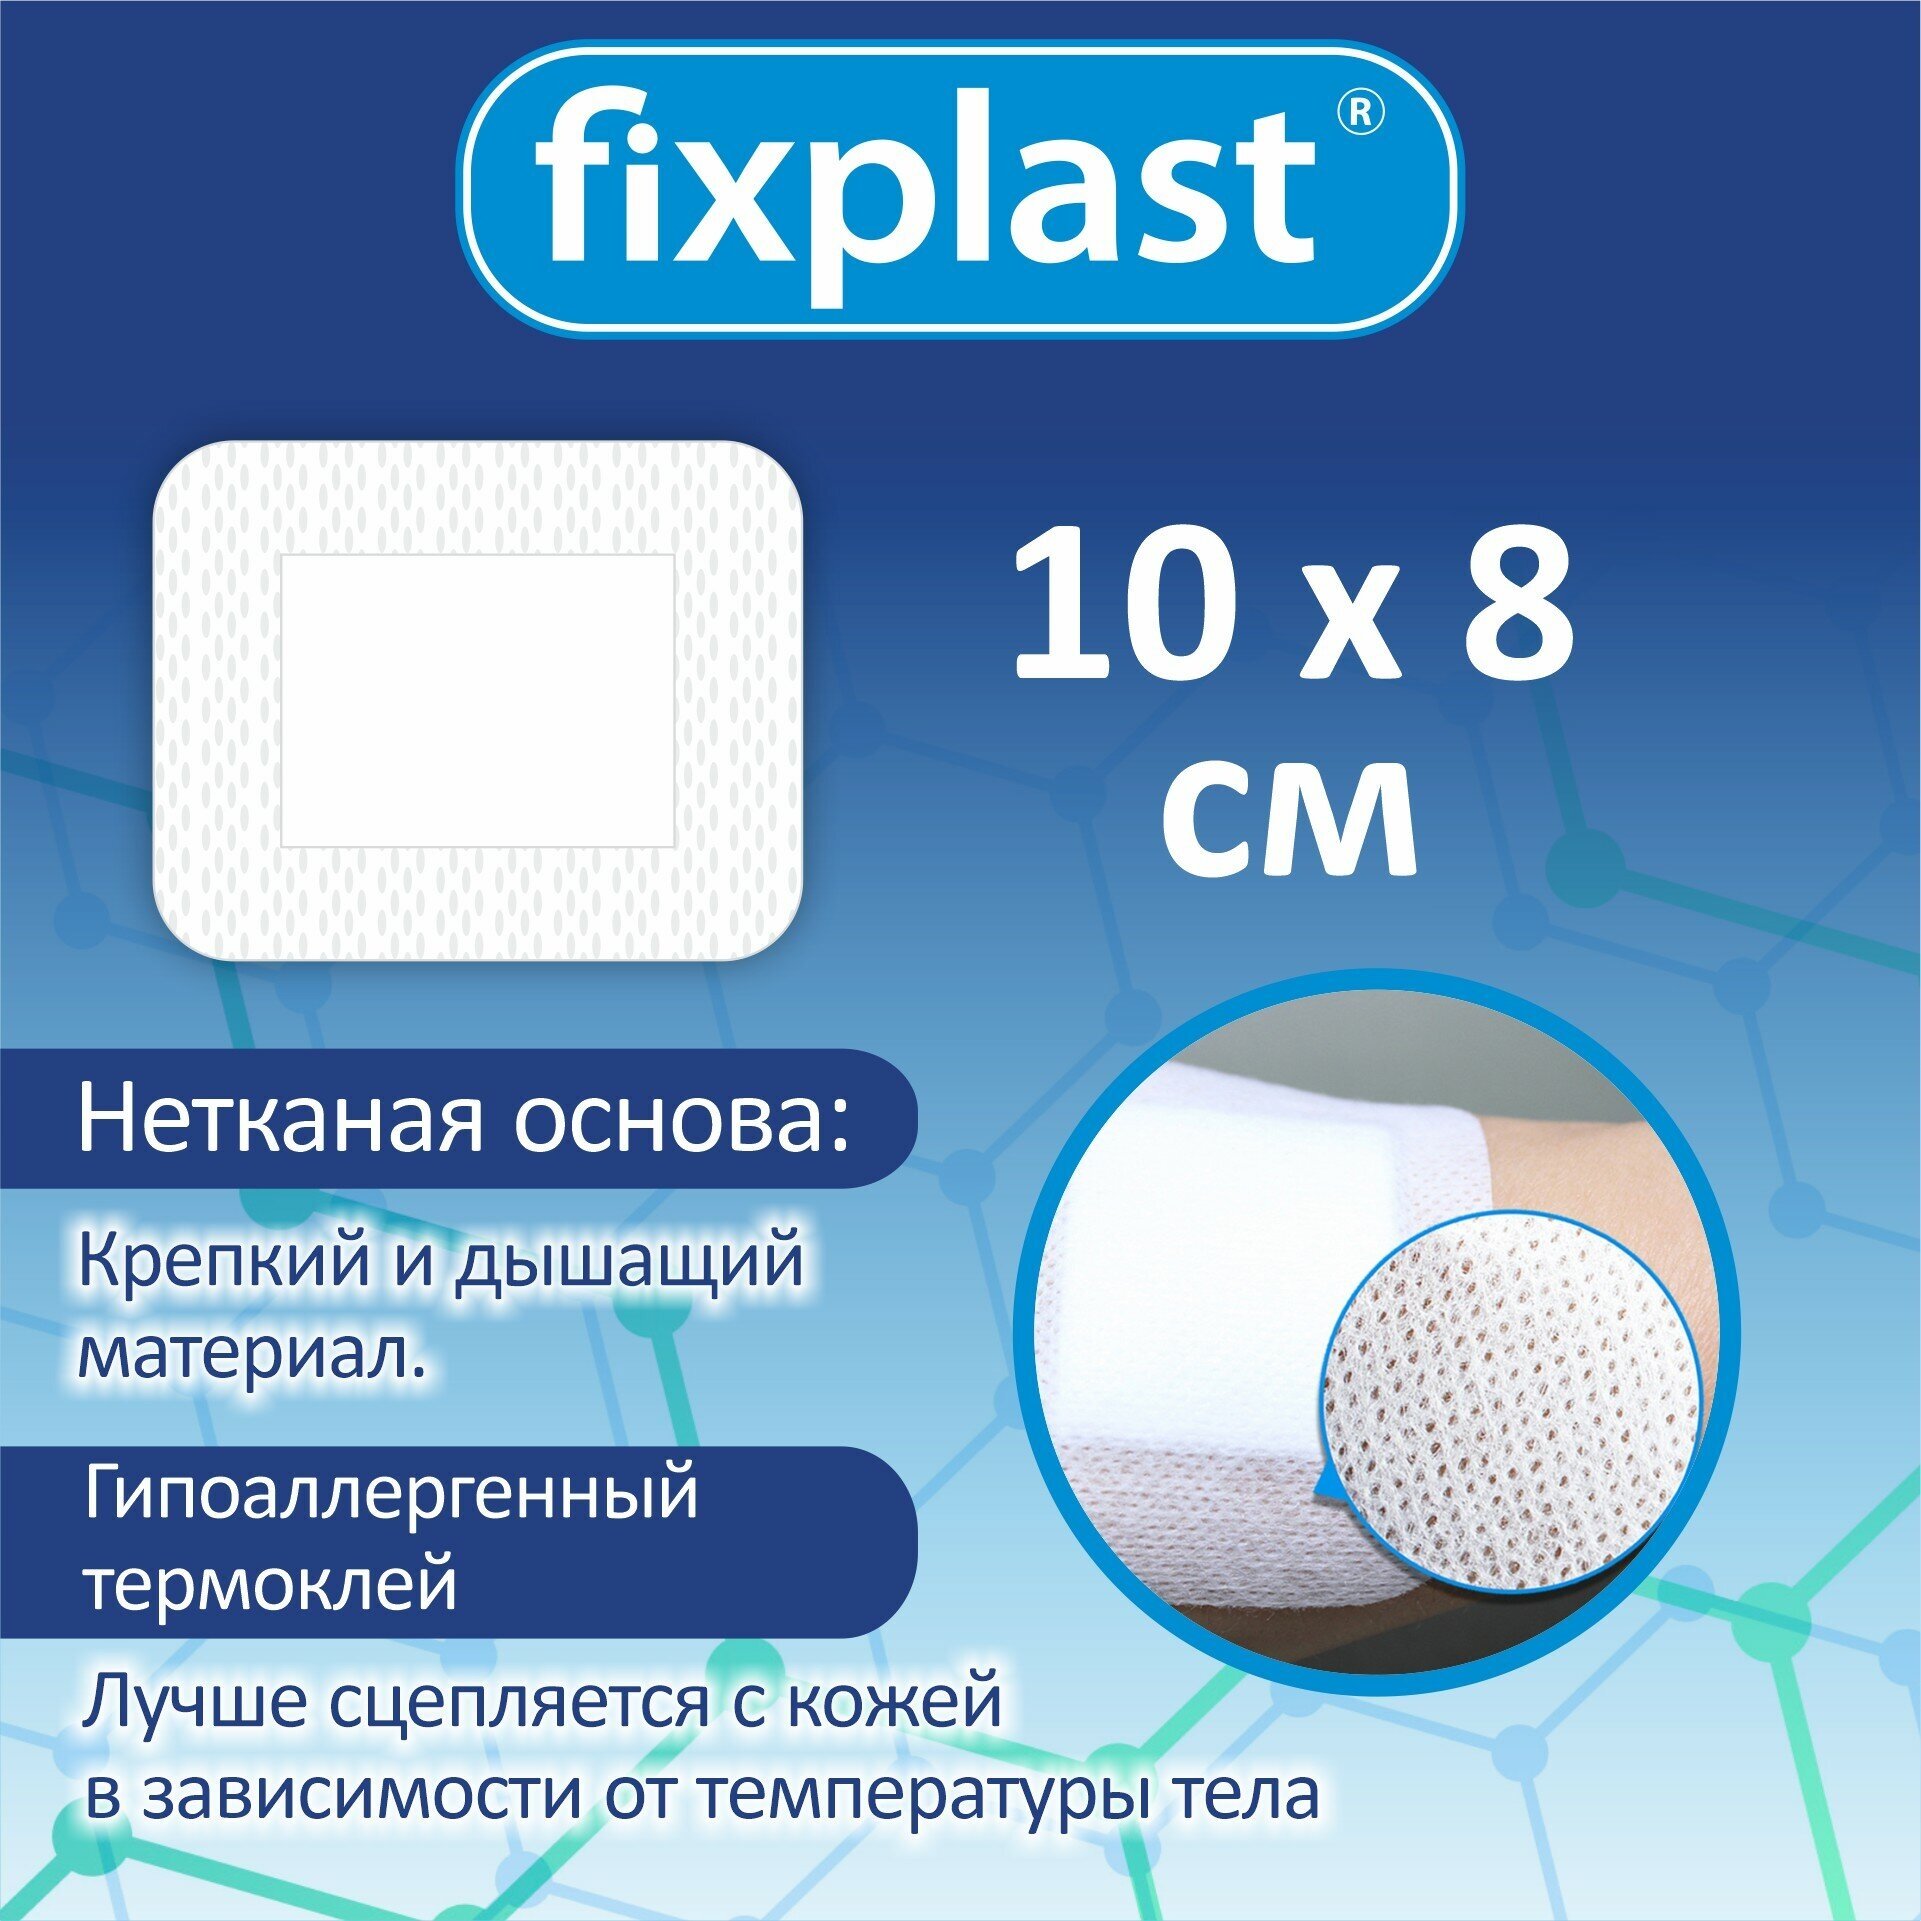 Пластырь повязка 10*8 см, стерильная 10 штук на рану и шов, Fixplast с сорбционной подушечкой